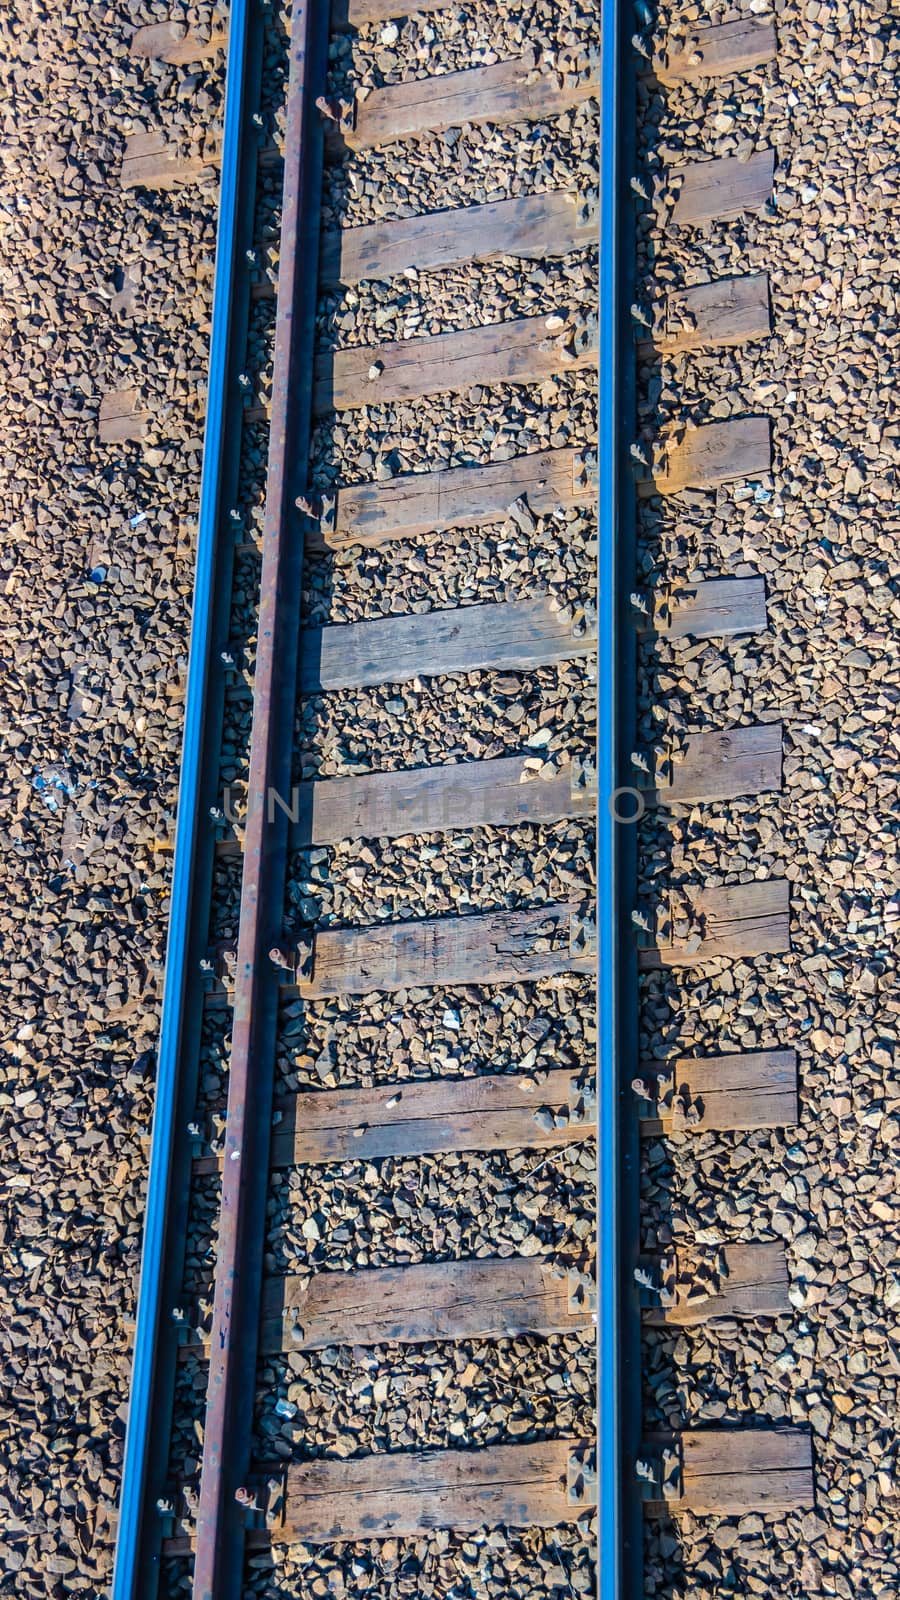 The railroad track.